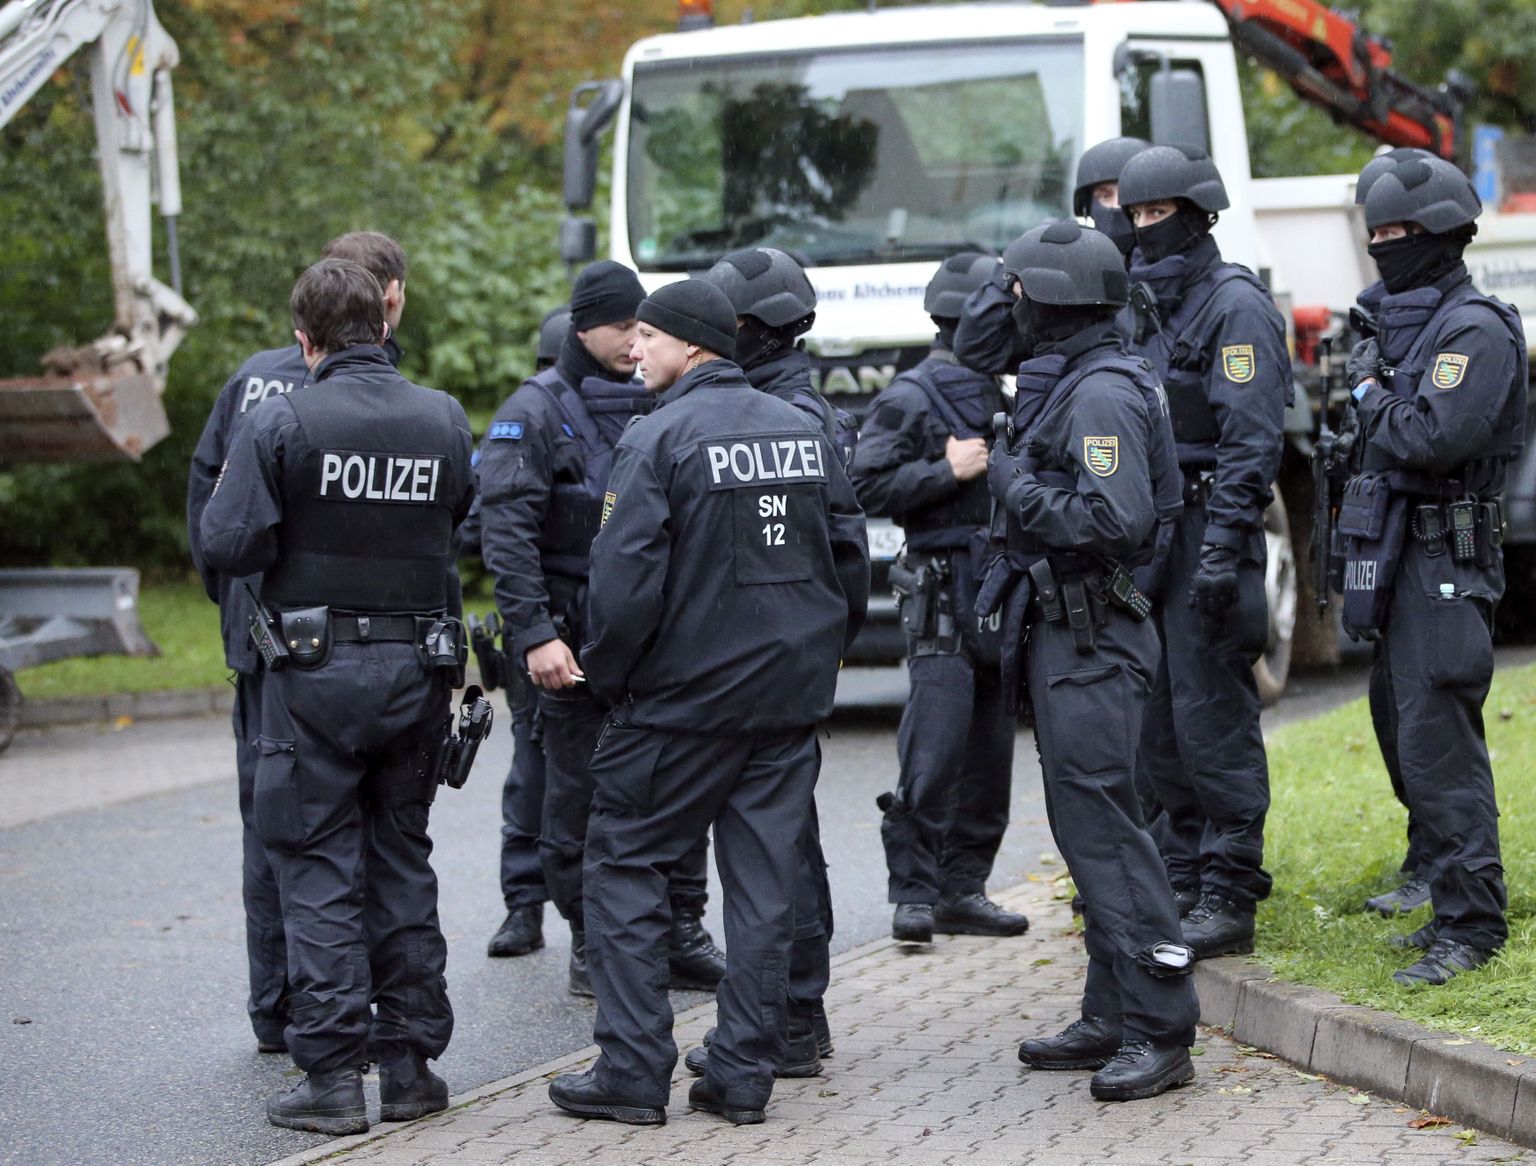 Немецкая полиция. Снимок иллюстративный.